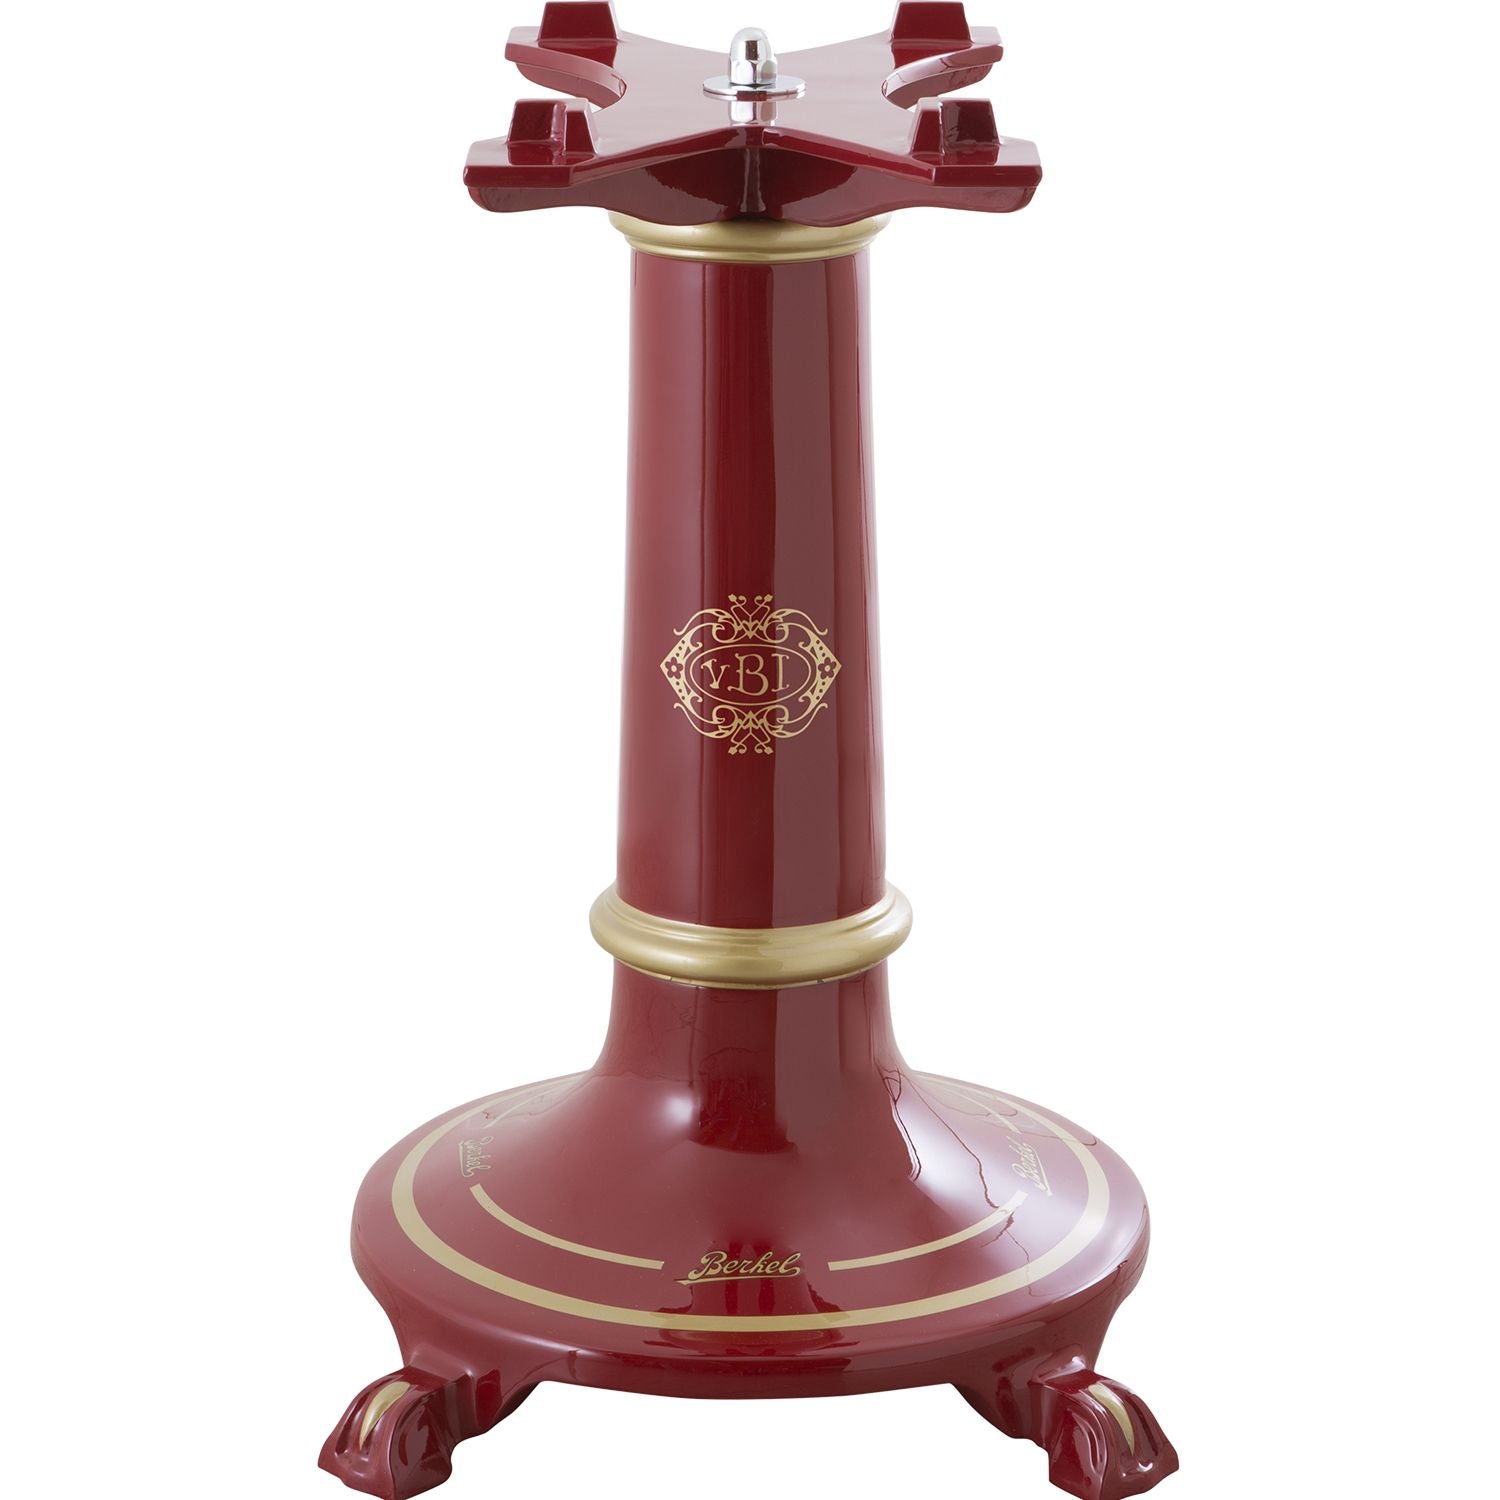 Berkel Pedestal for Flywheel Slicer L16 Red